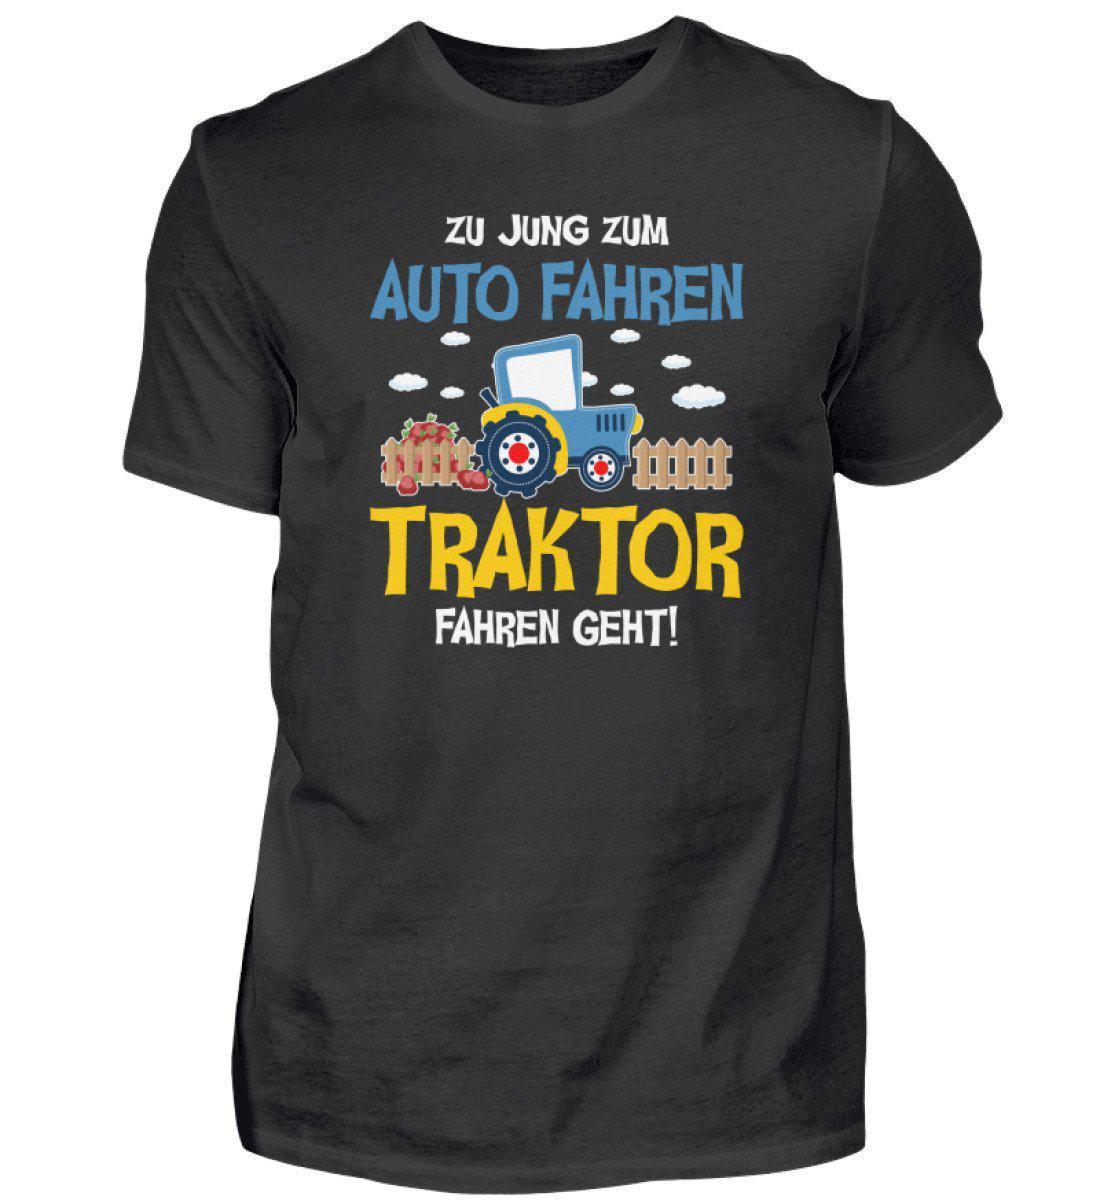 Traktor fahren geht · Herren T-Shirt-Herren Basic T-Shirt-Black-S-Agrarstarz